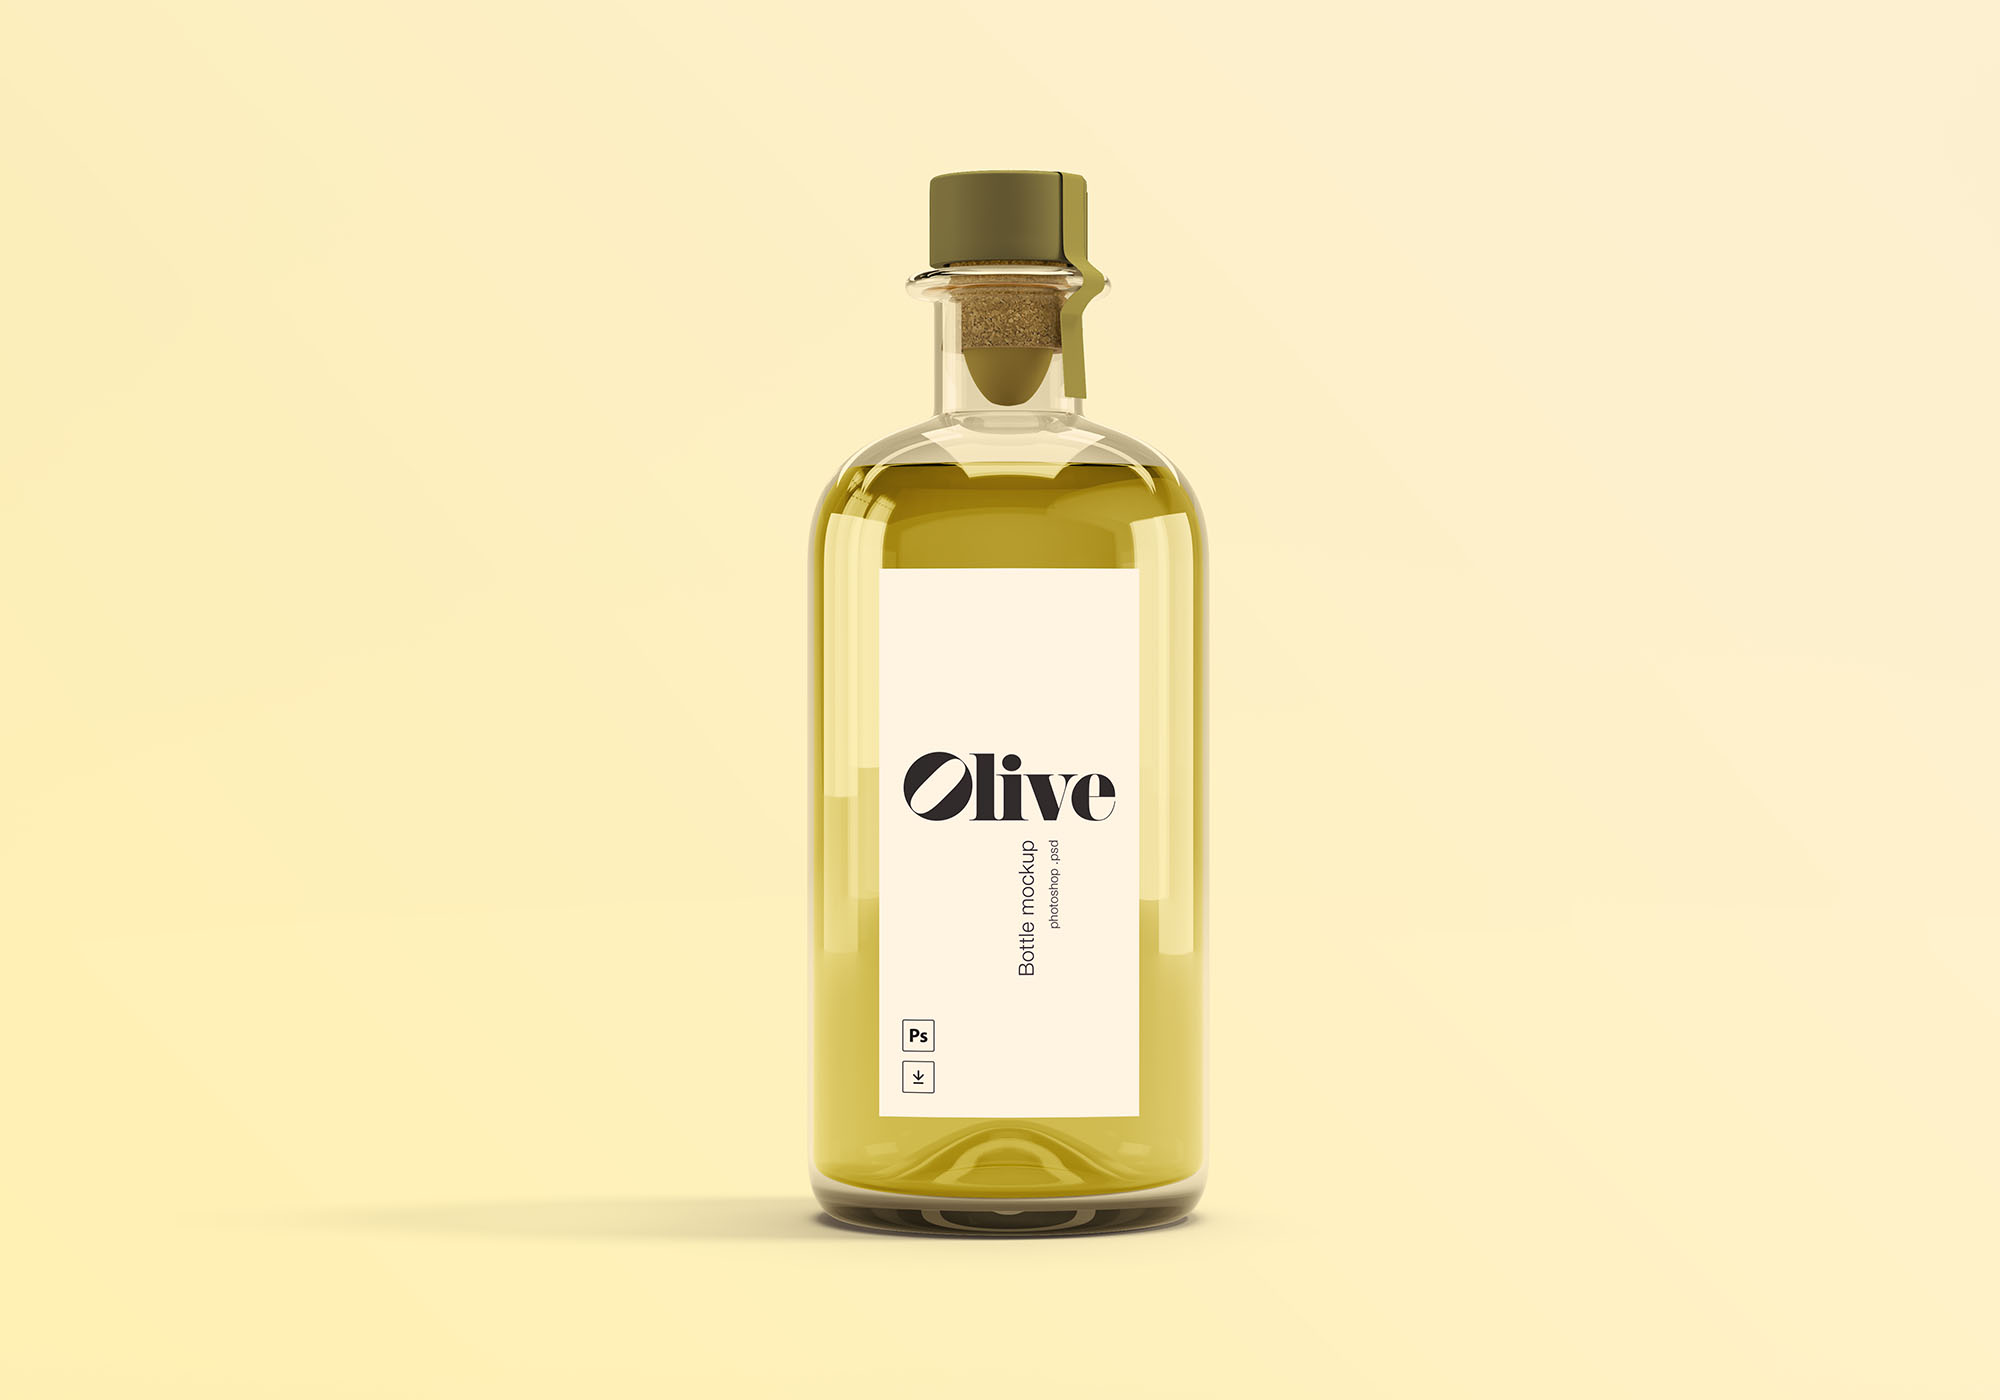 橄榄油瓶玻璃瓶设计效果图样机模板 Olive Oil Bottle Mockup插图(1)